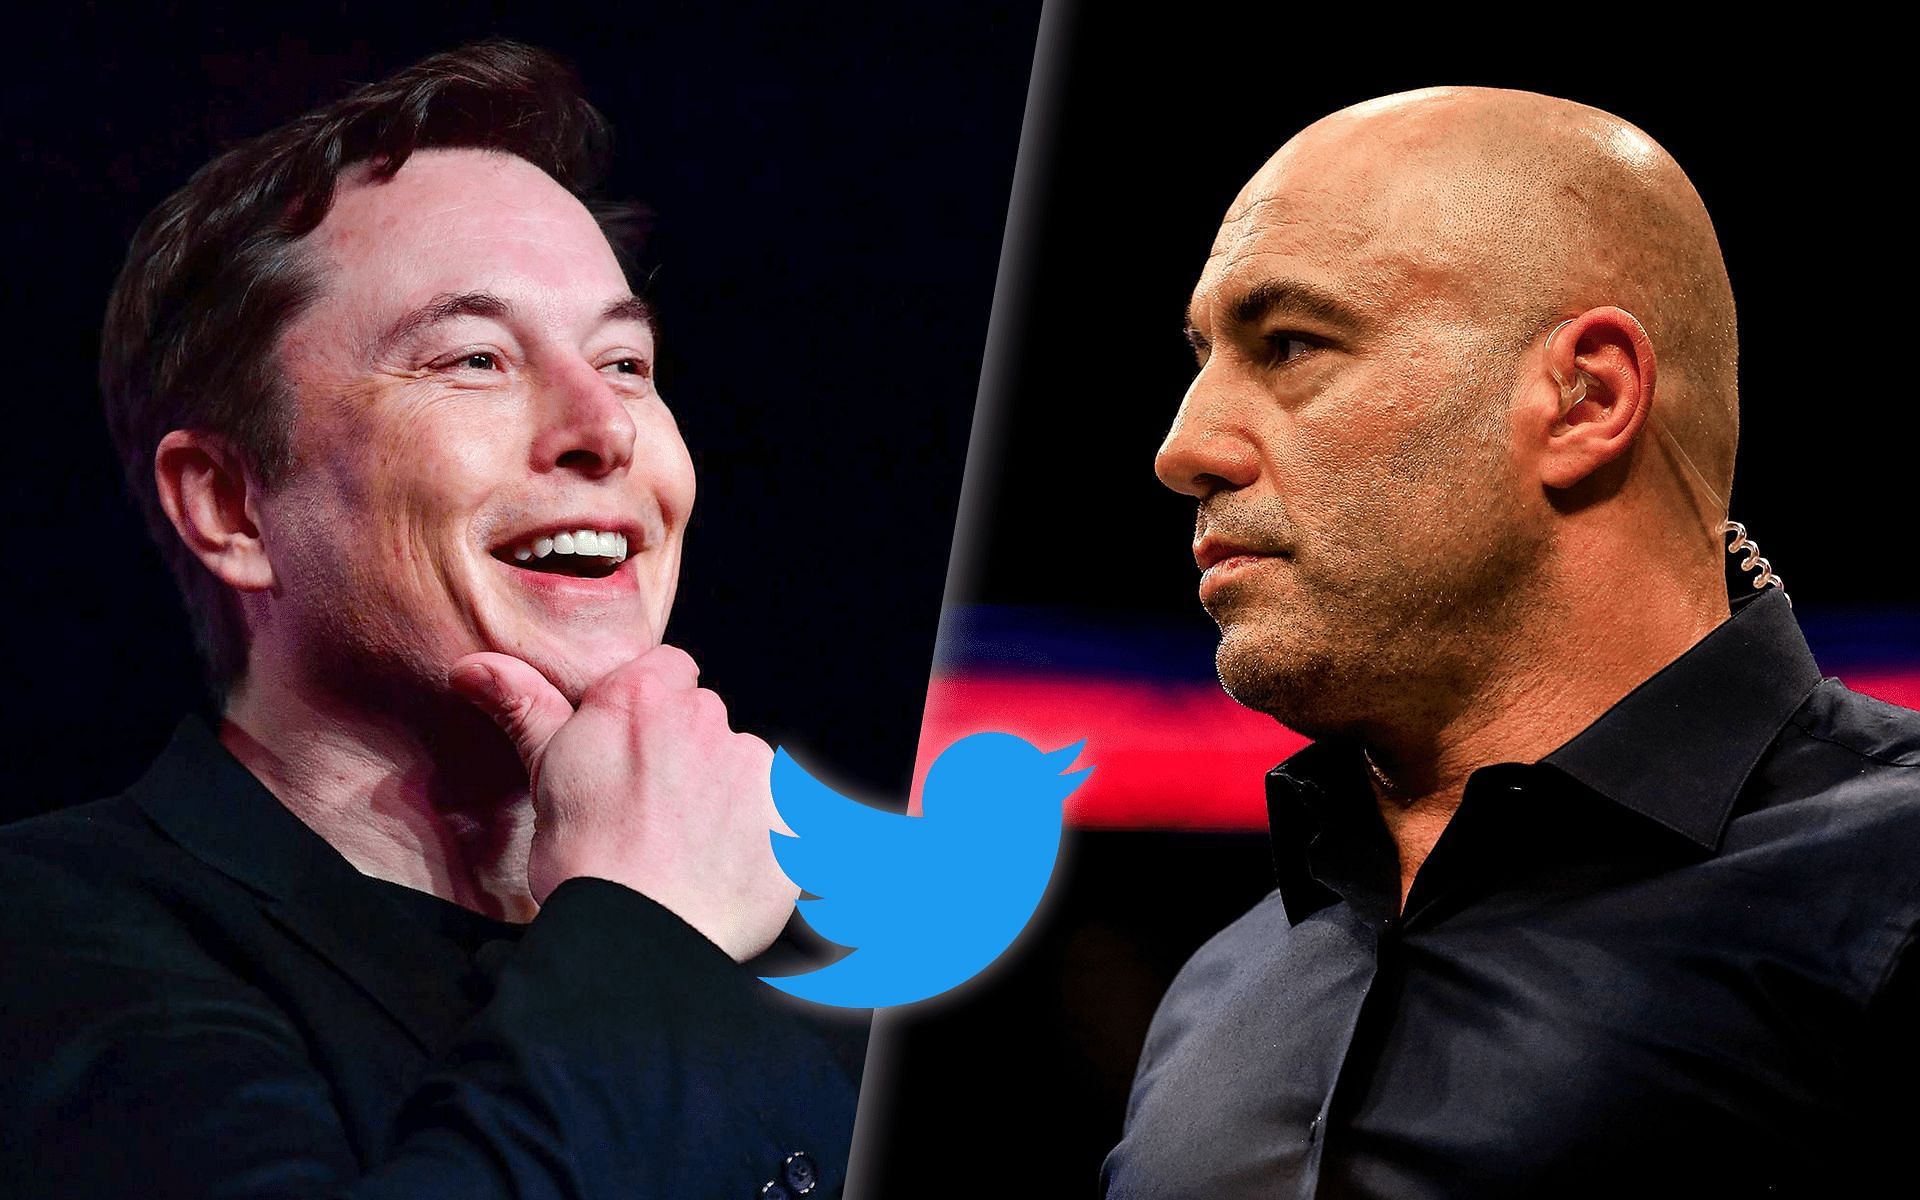 Joe Rogan (right) comments on Elon Musk&#039;s (left) attempt to take over Twitter [Musk image via Vox.com, Twitter logo via Twitter.com]